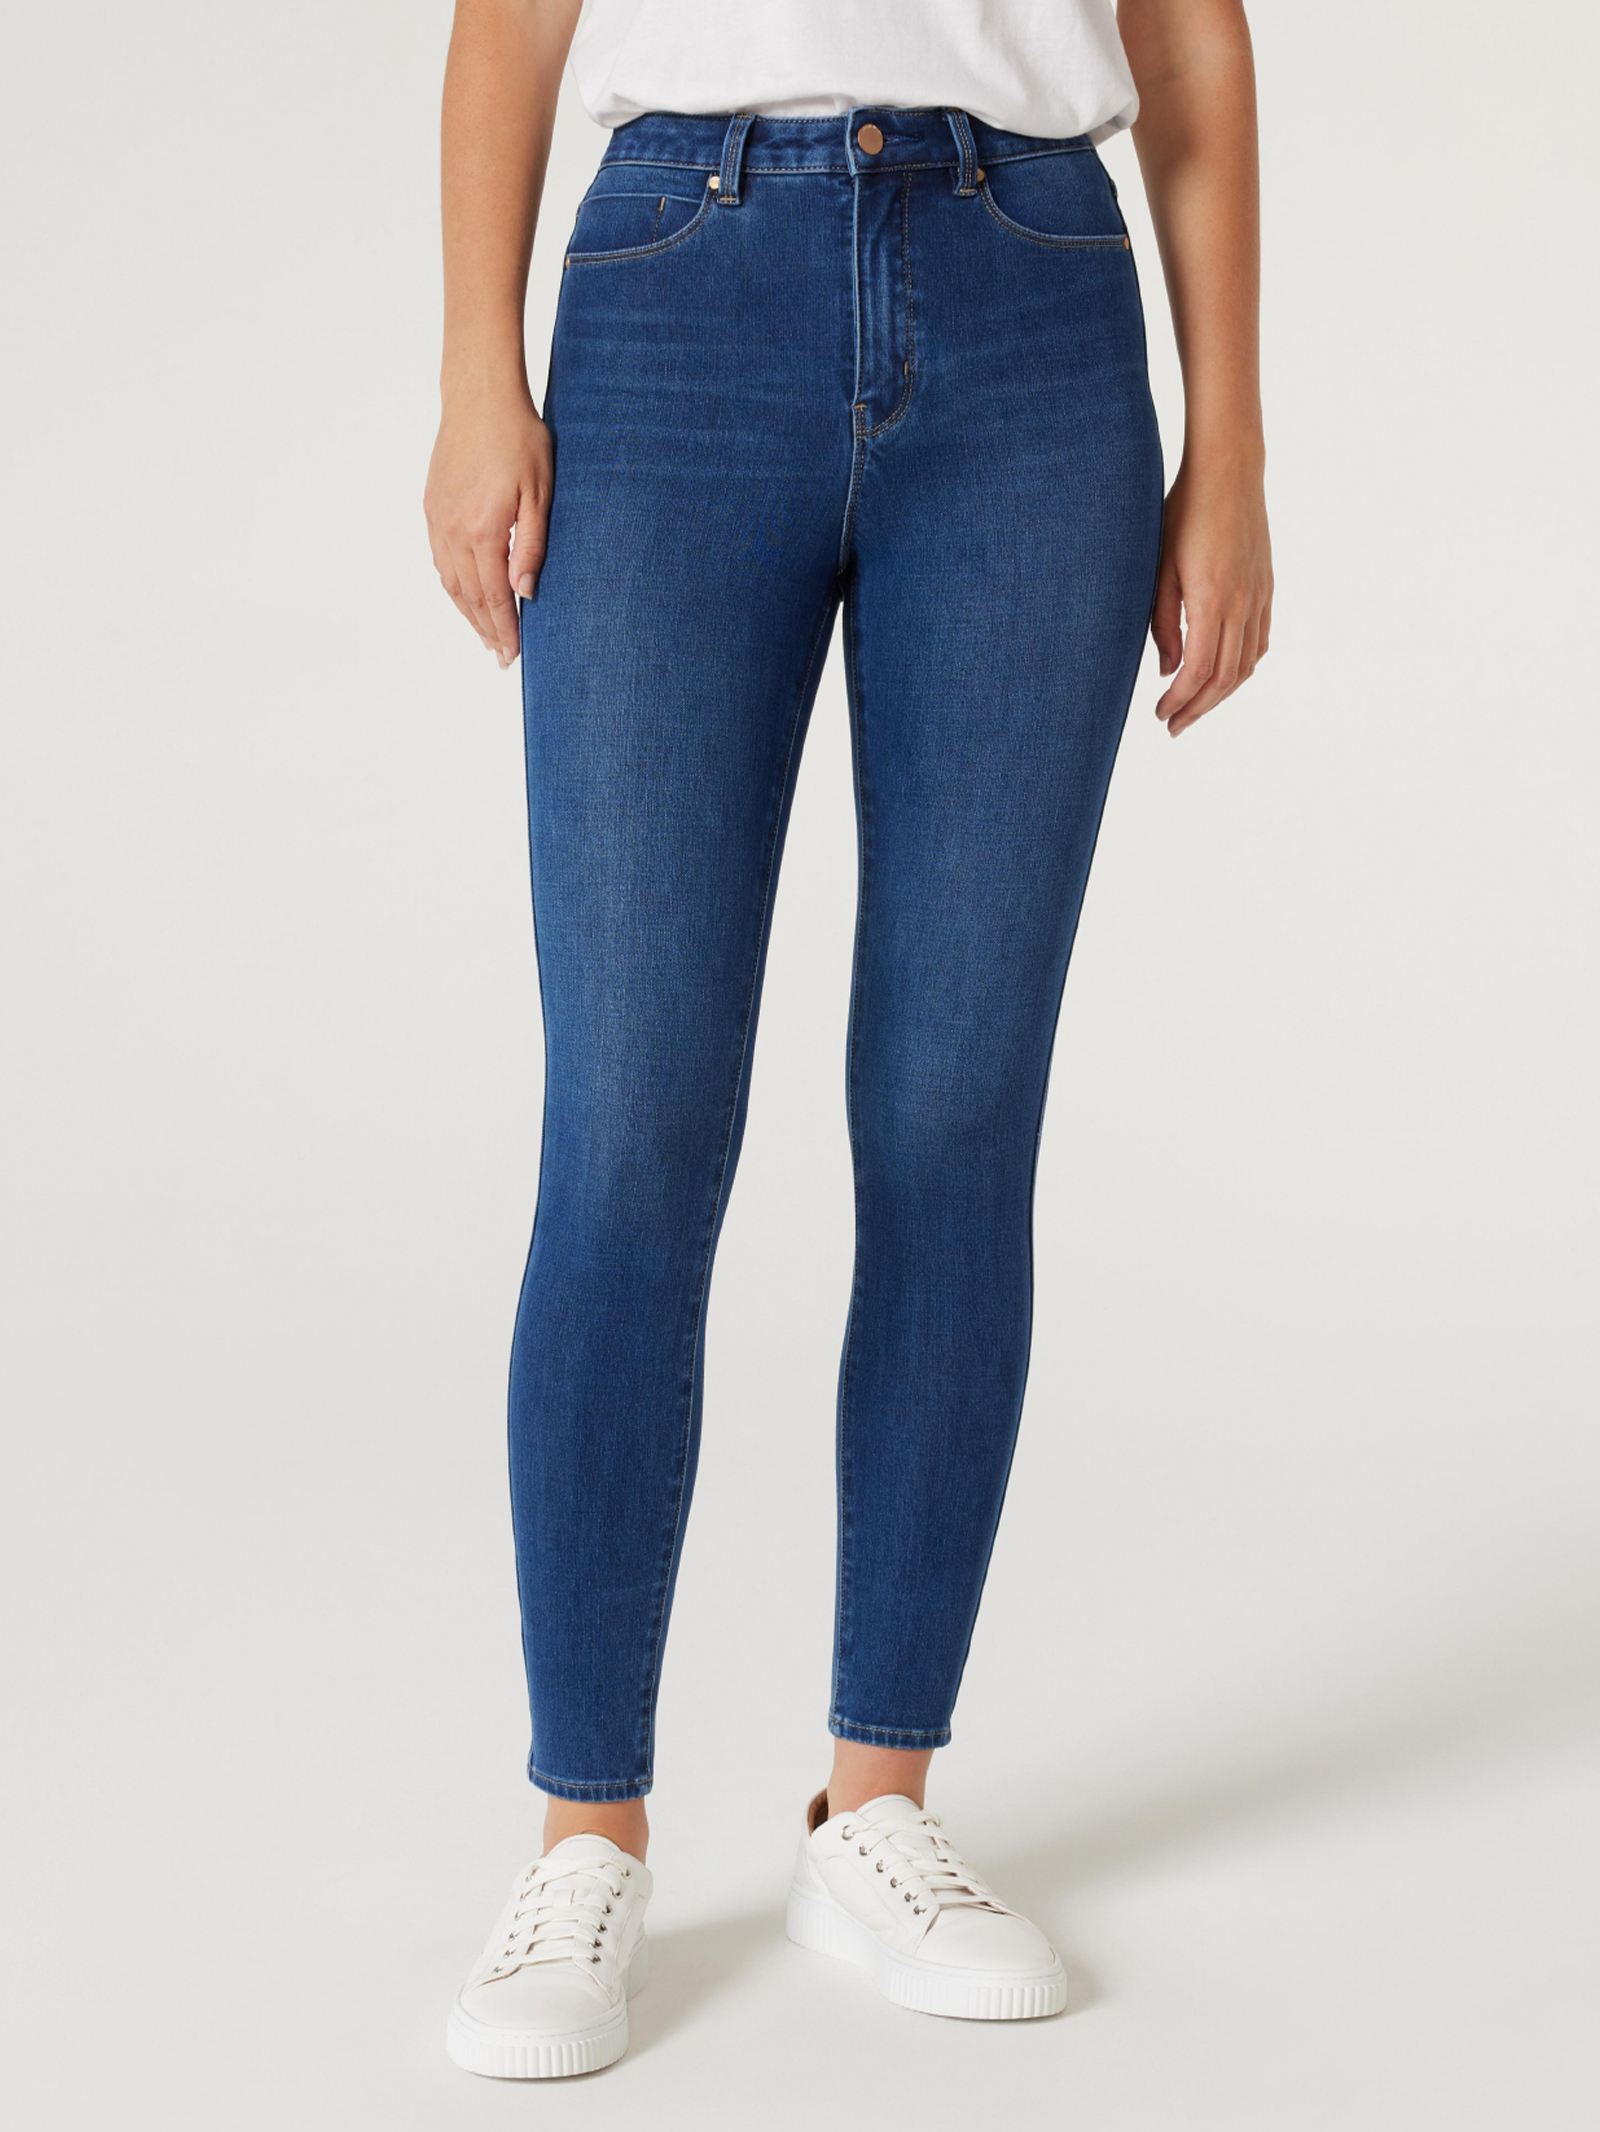 Freeform 360 High Waisted Skinny jeans | Jeanswest